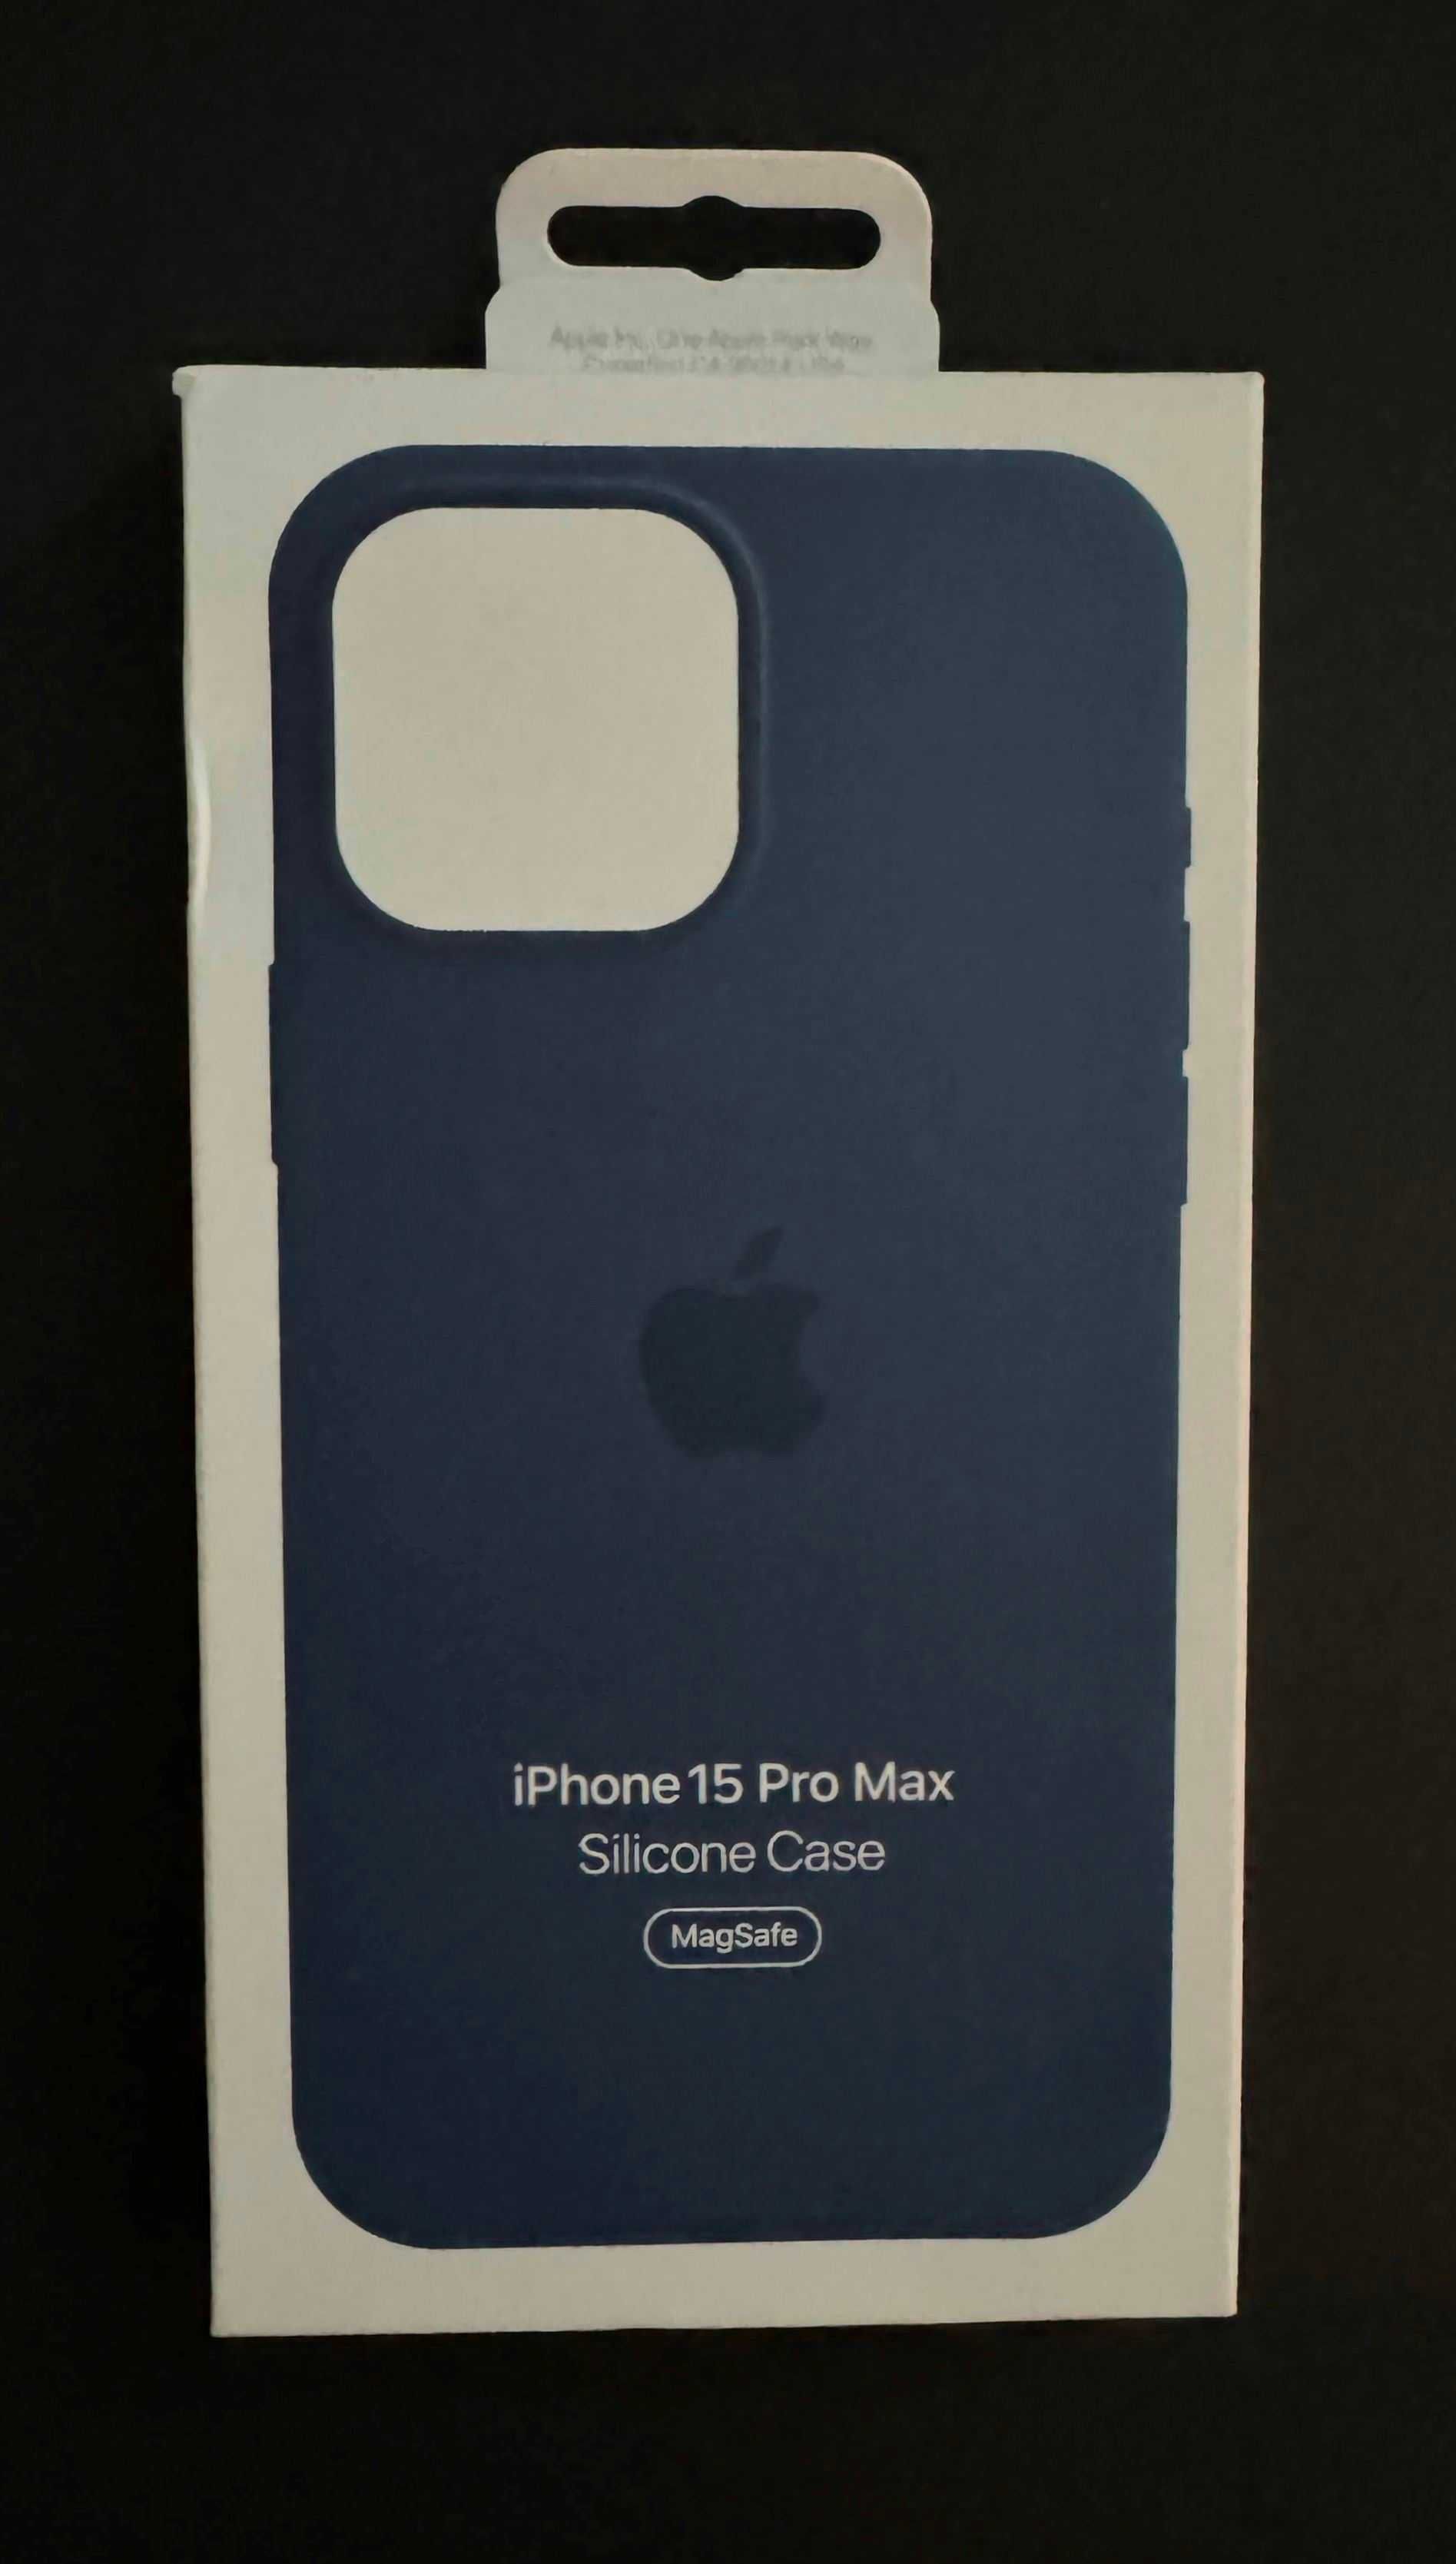 Capa em silicone azul escuro com MagSafe para iPhone 15 Pro Max